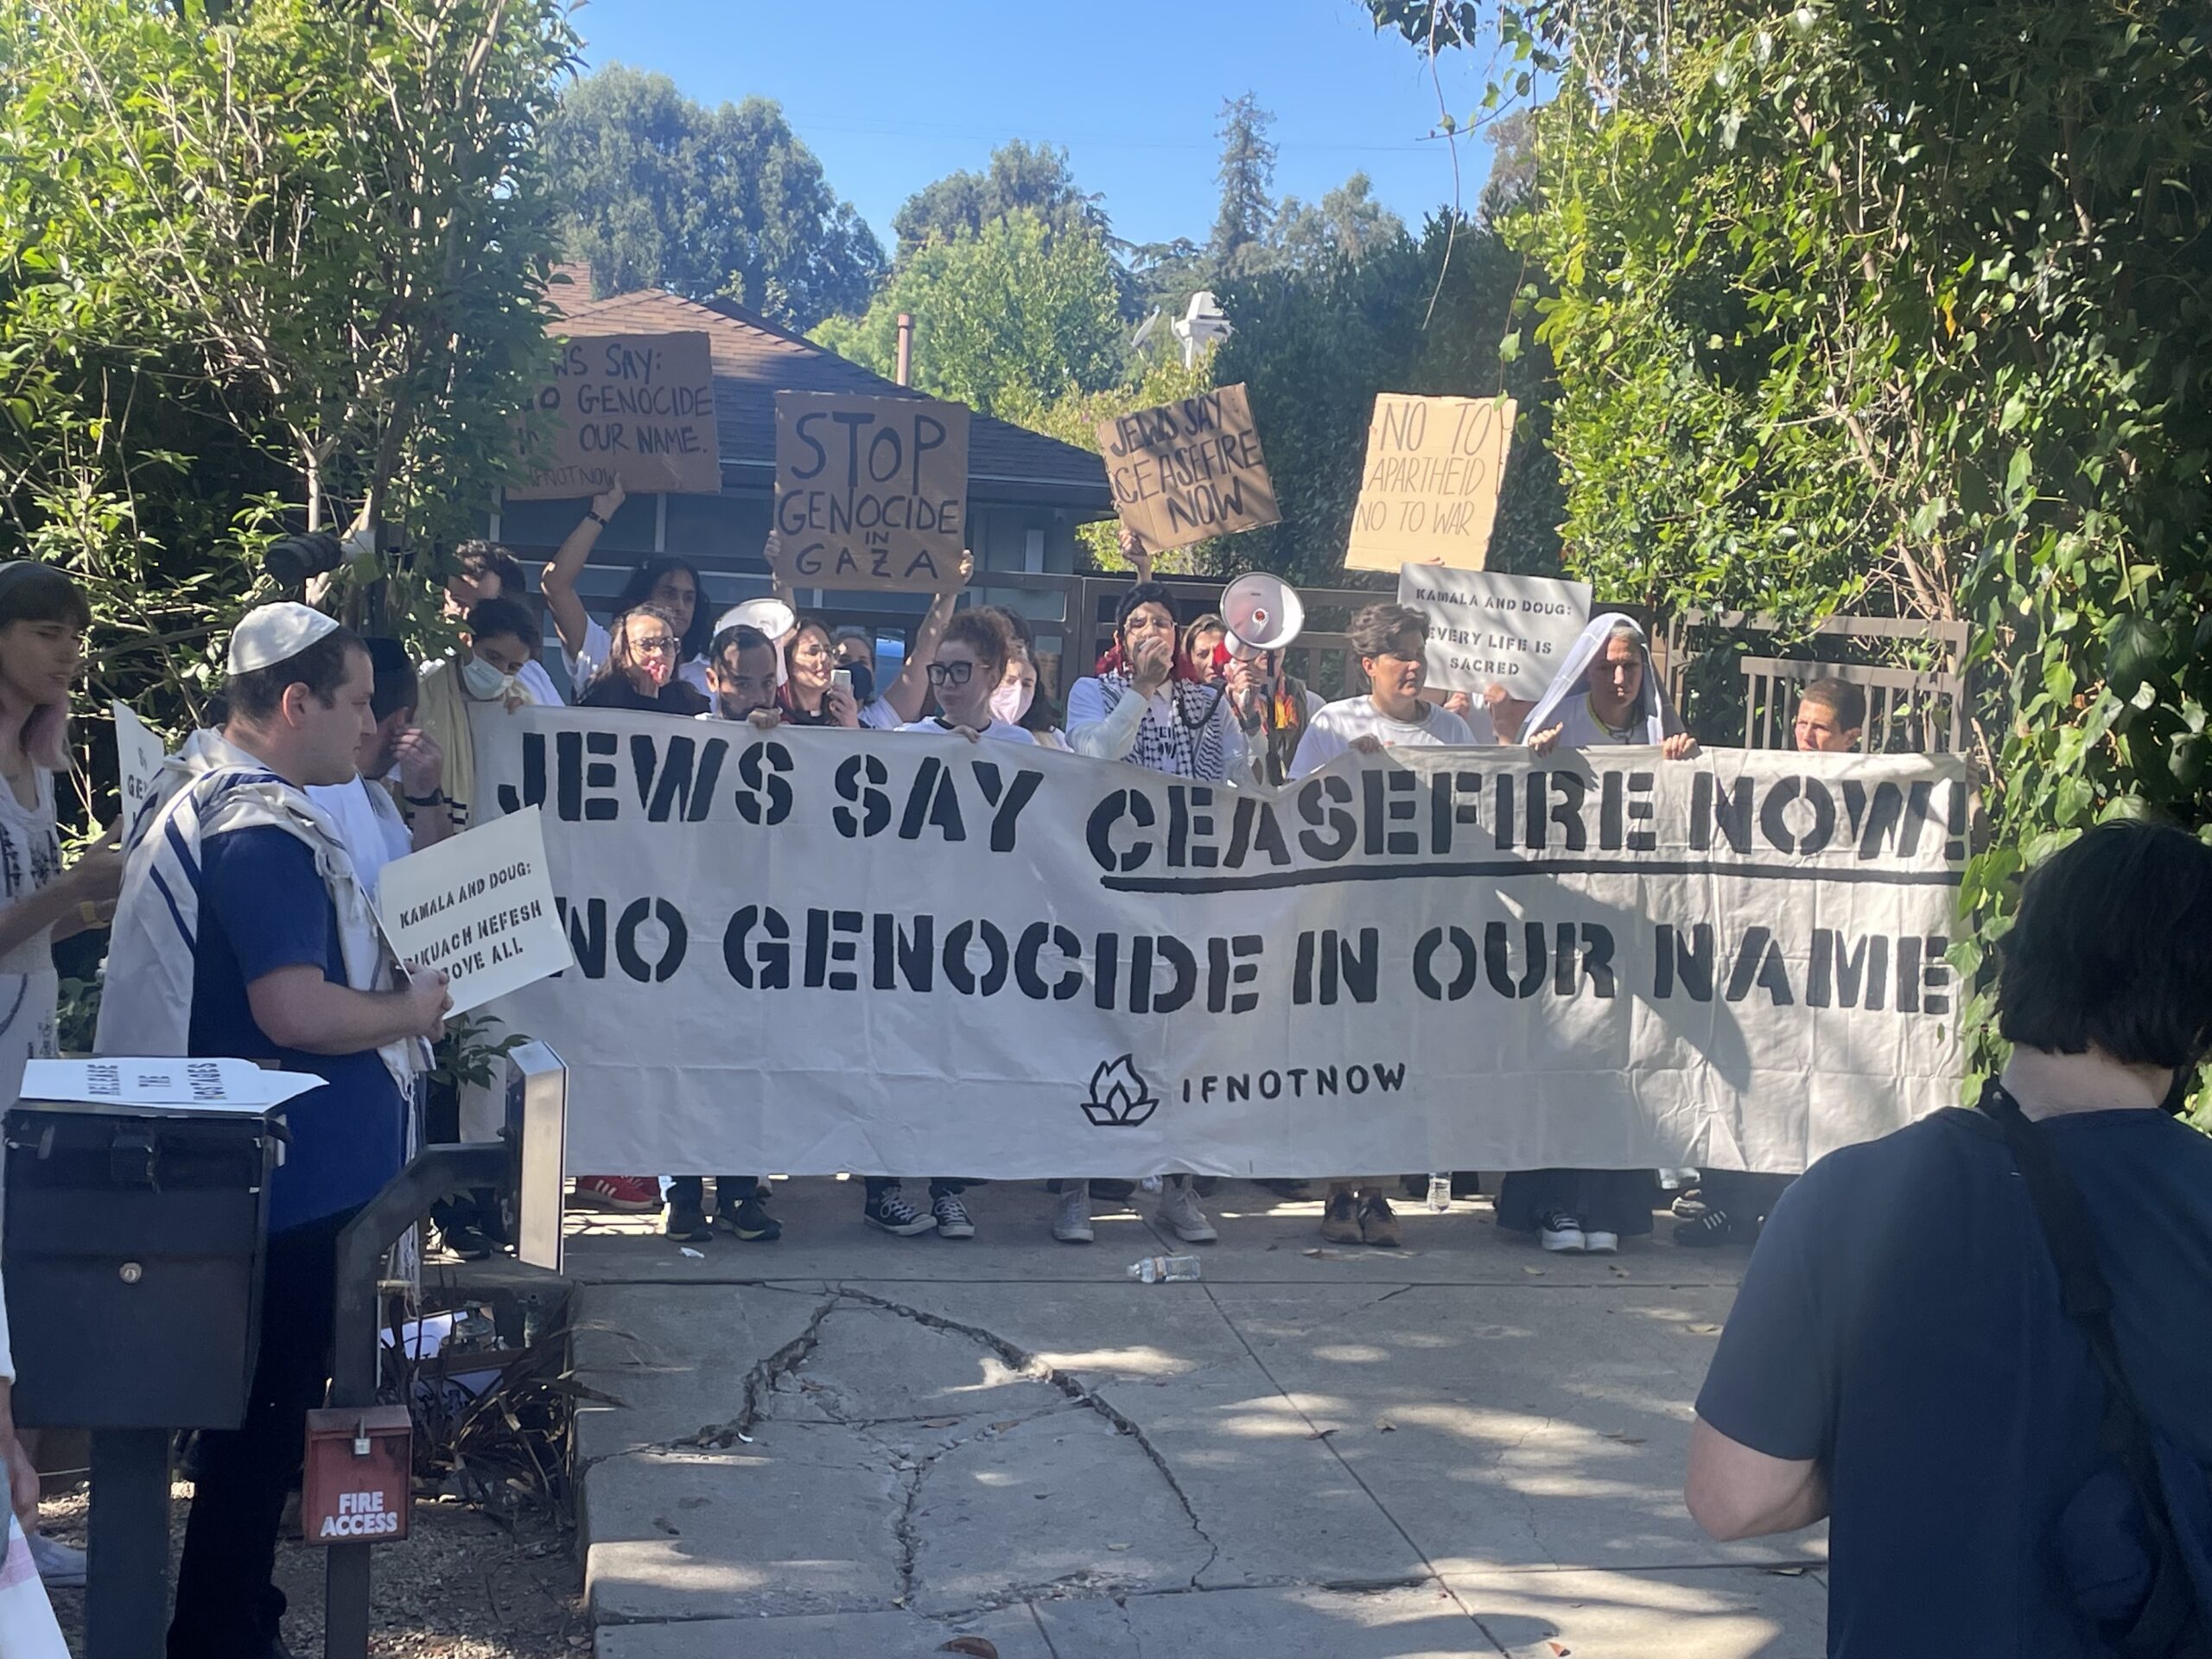 Une cinquantaine de personnes brandissant des pancartes indiquant Stop au génocide à Gaza se tiennent derrière une banderole en noir et blanc sur laquelle on peut lire Les Juifs disent cessez-le-feu maintenant.  Pas de génocide en notre nom.  SI PAS MAINTENANT